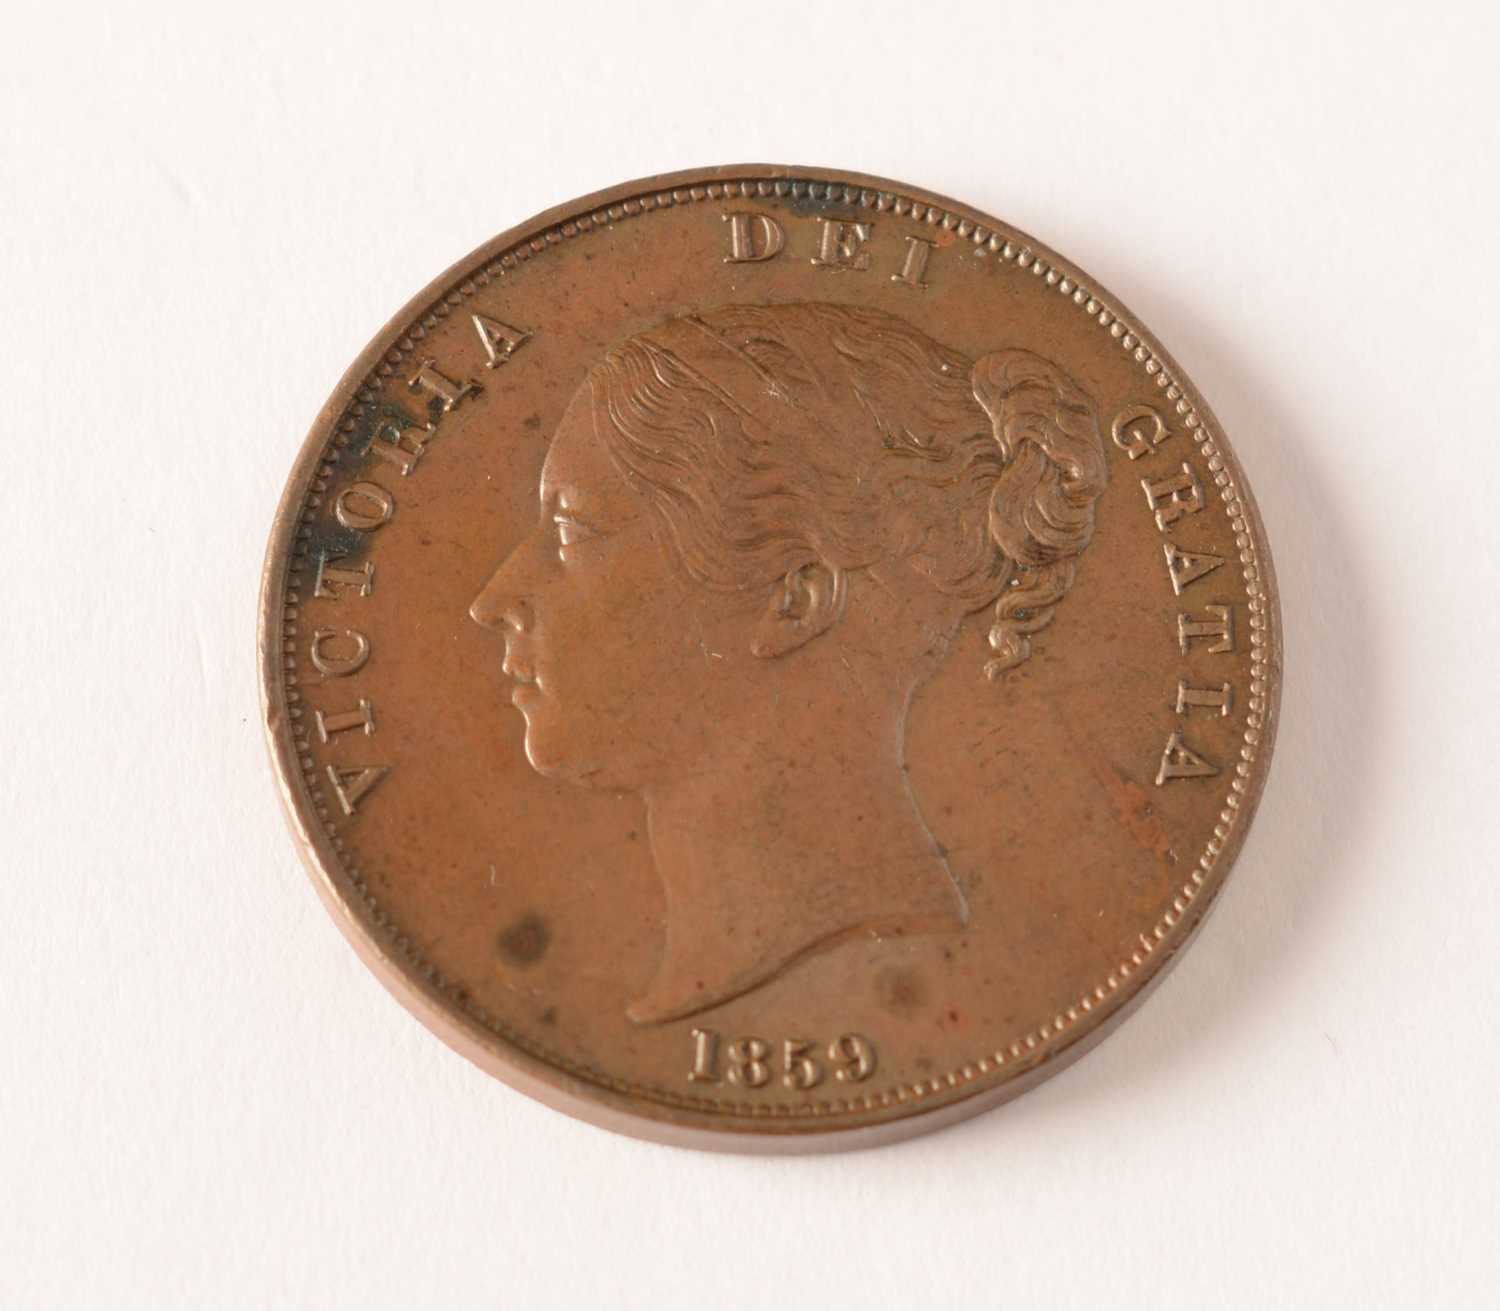 Lot 126 - Queen Victoria, 1859 Penny